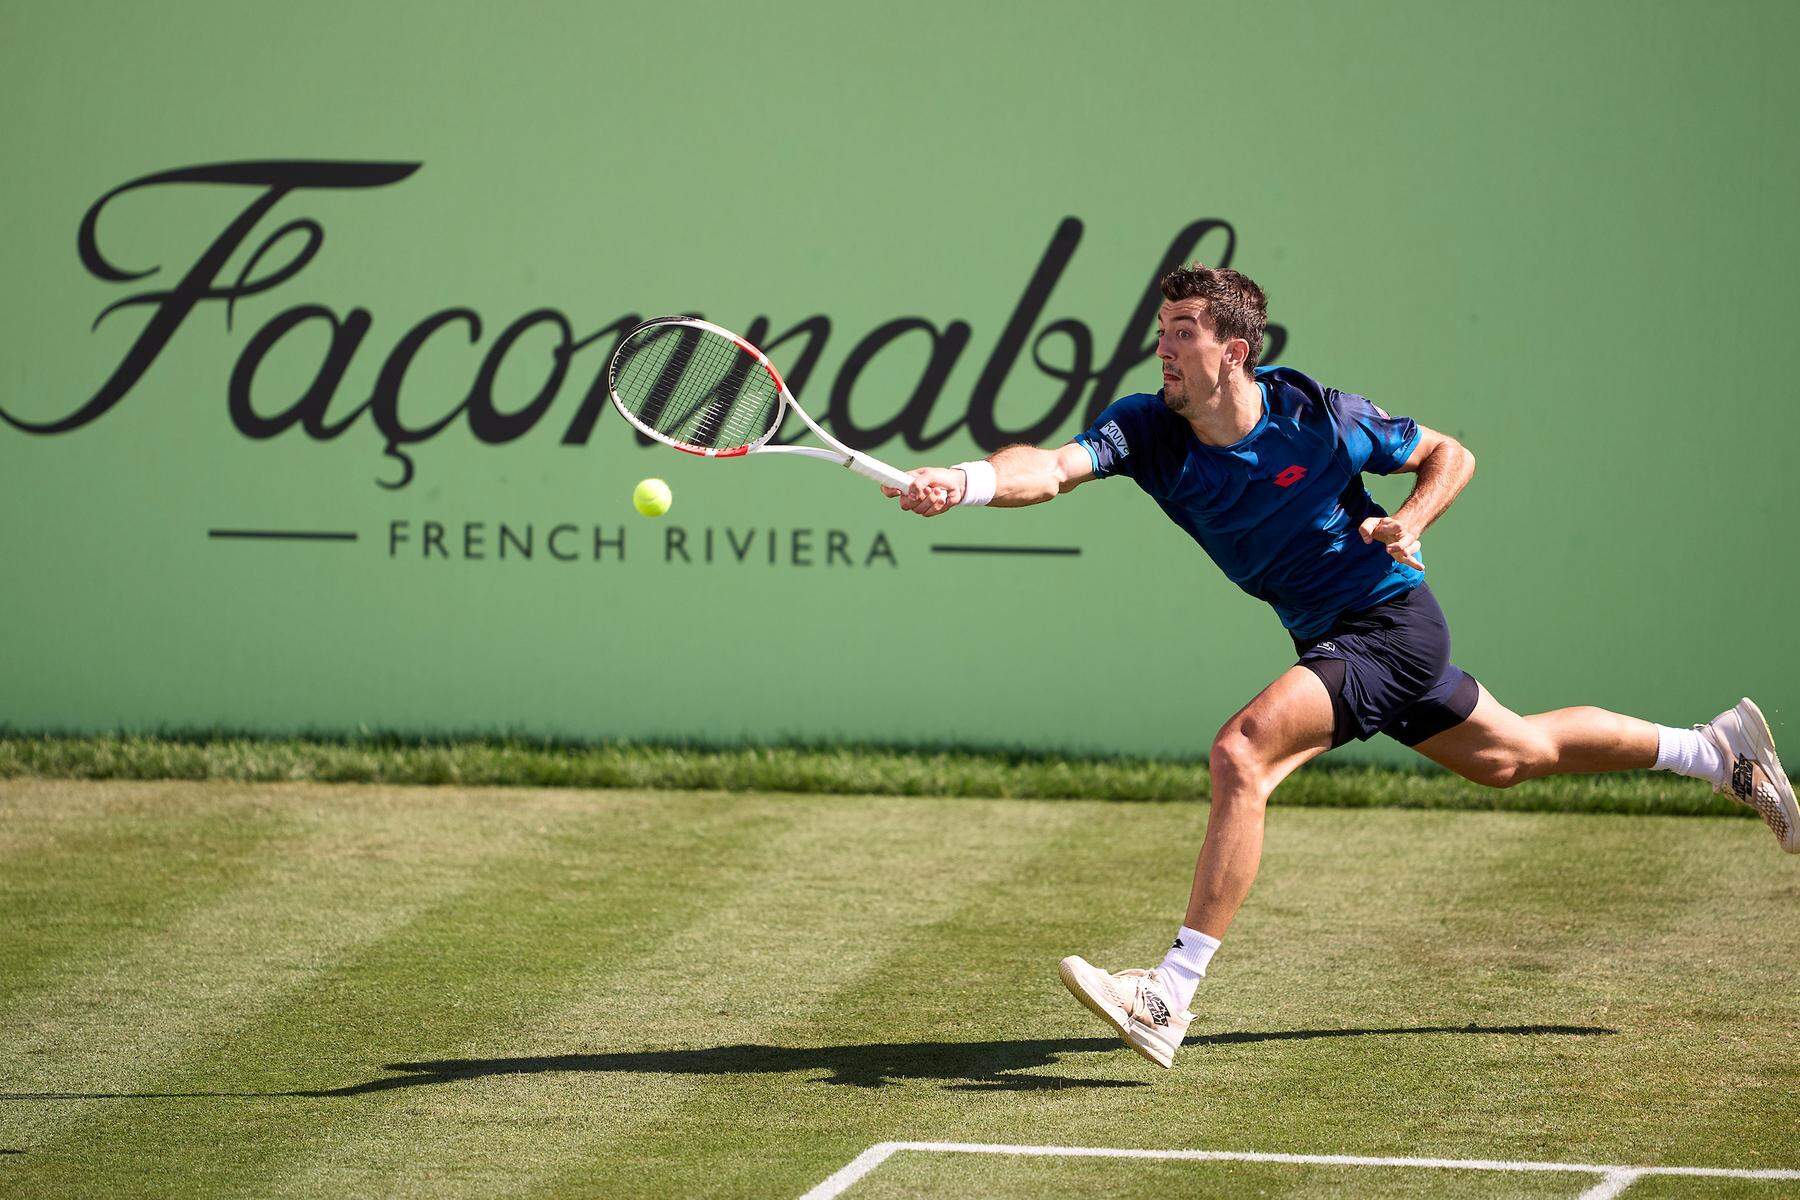 Tennis auf Mallorca: Reif für die Insel - Ofner steht bereits im Viertelfinale